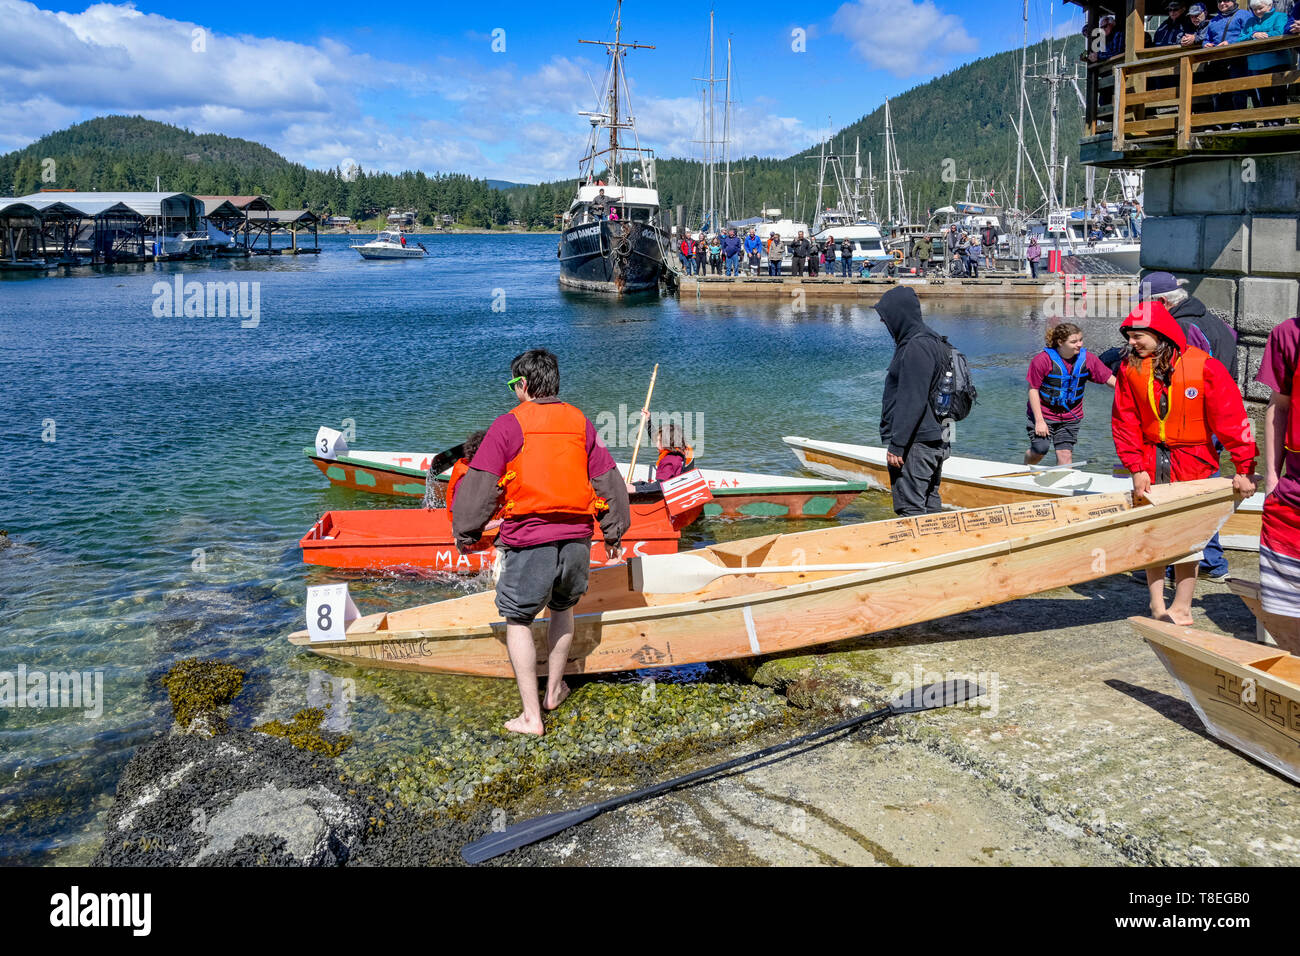 April Tools Wooden Boat Challenge, Pender Harbour, Sunshine Coast